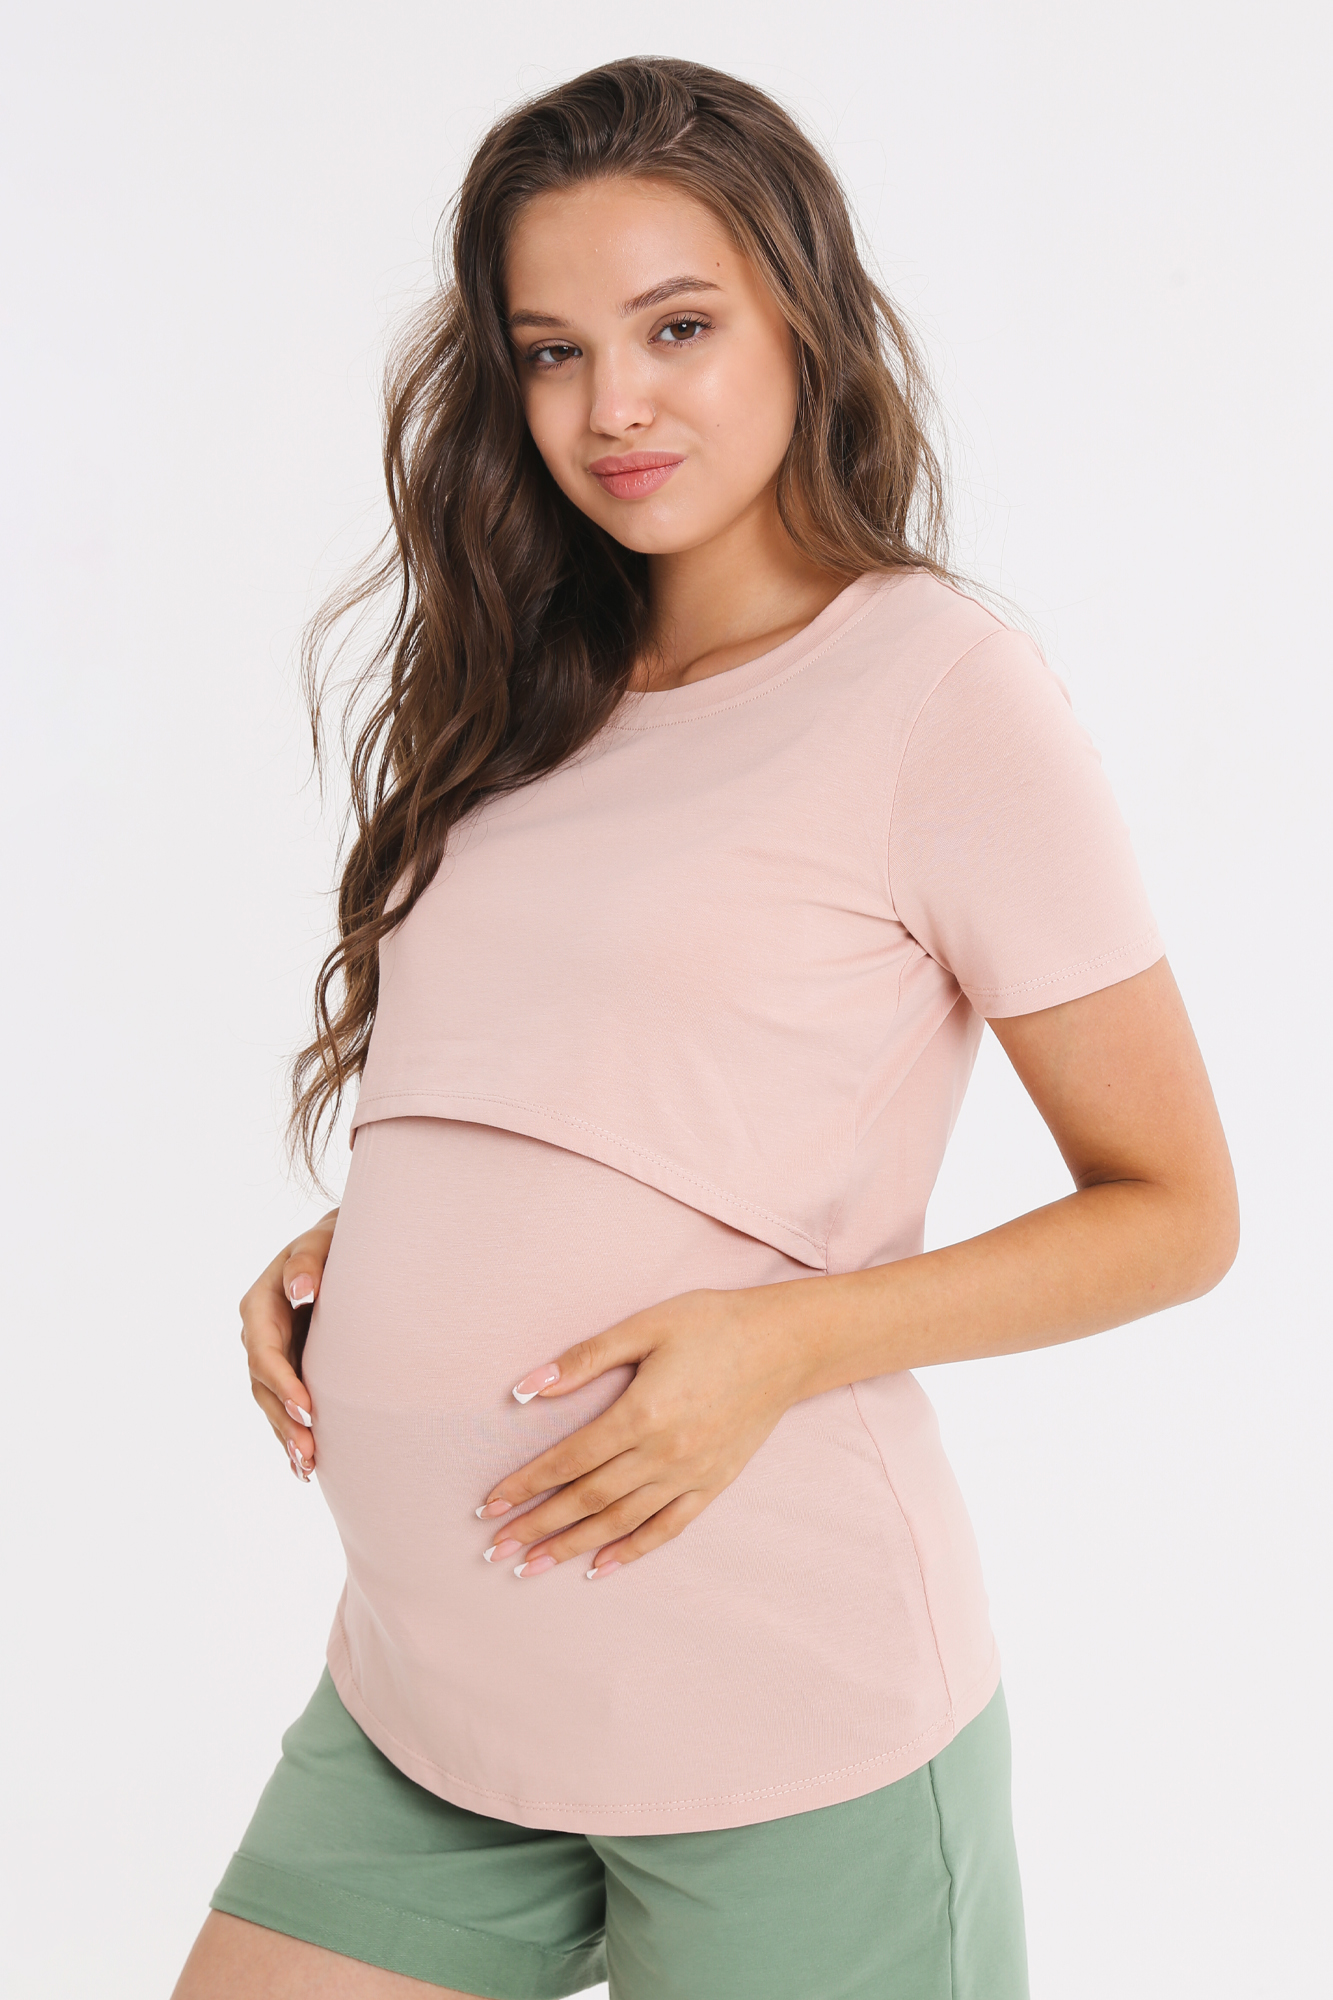 Футболка для беременных женская Magica bellezza МВ7006 розовая 46